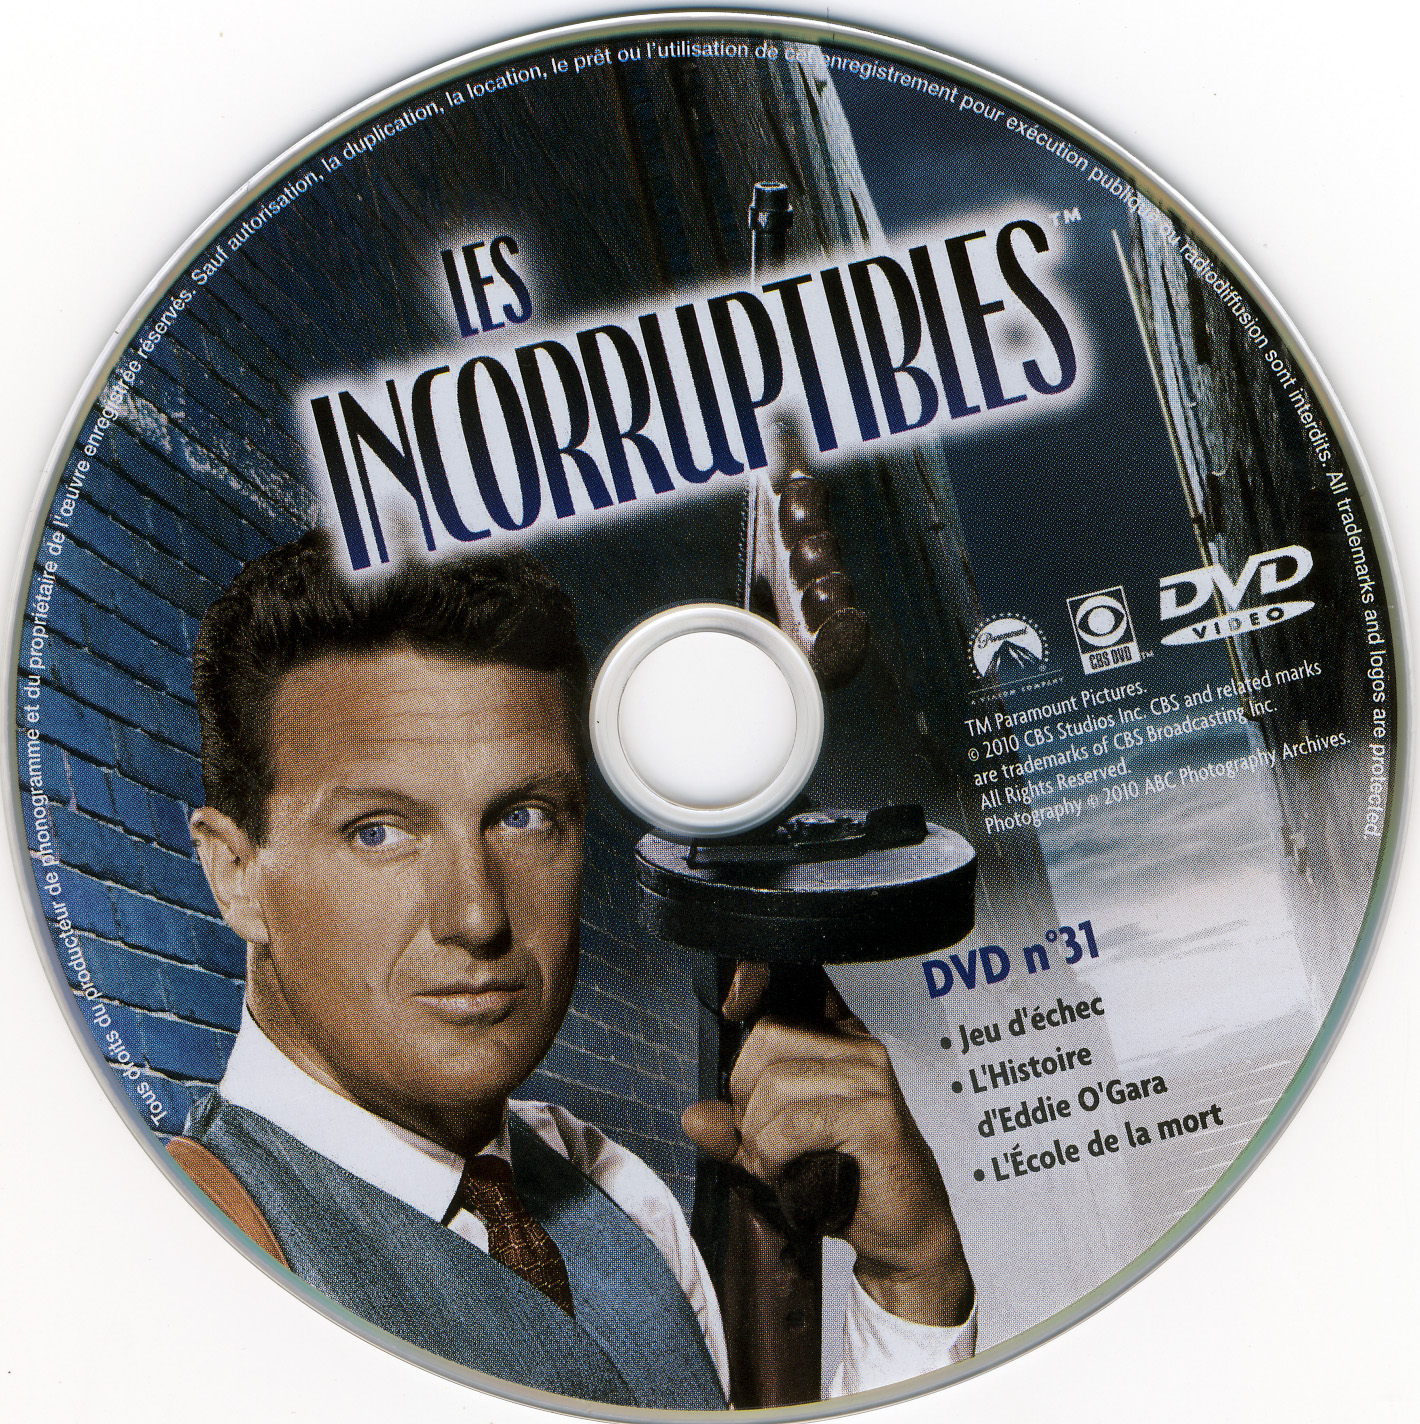 Les incorruptibles intgrale DVD 31